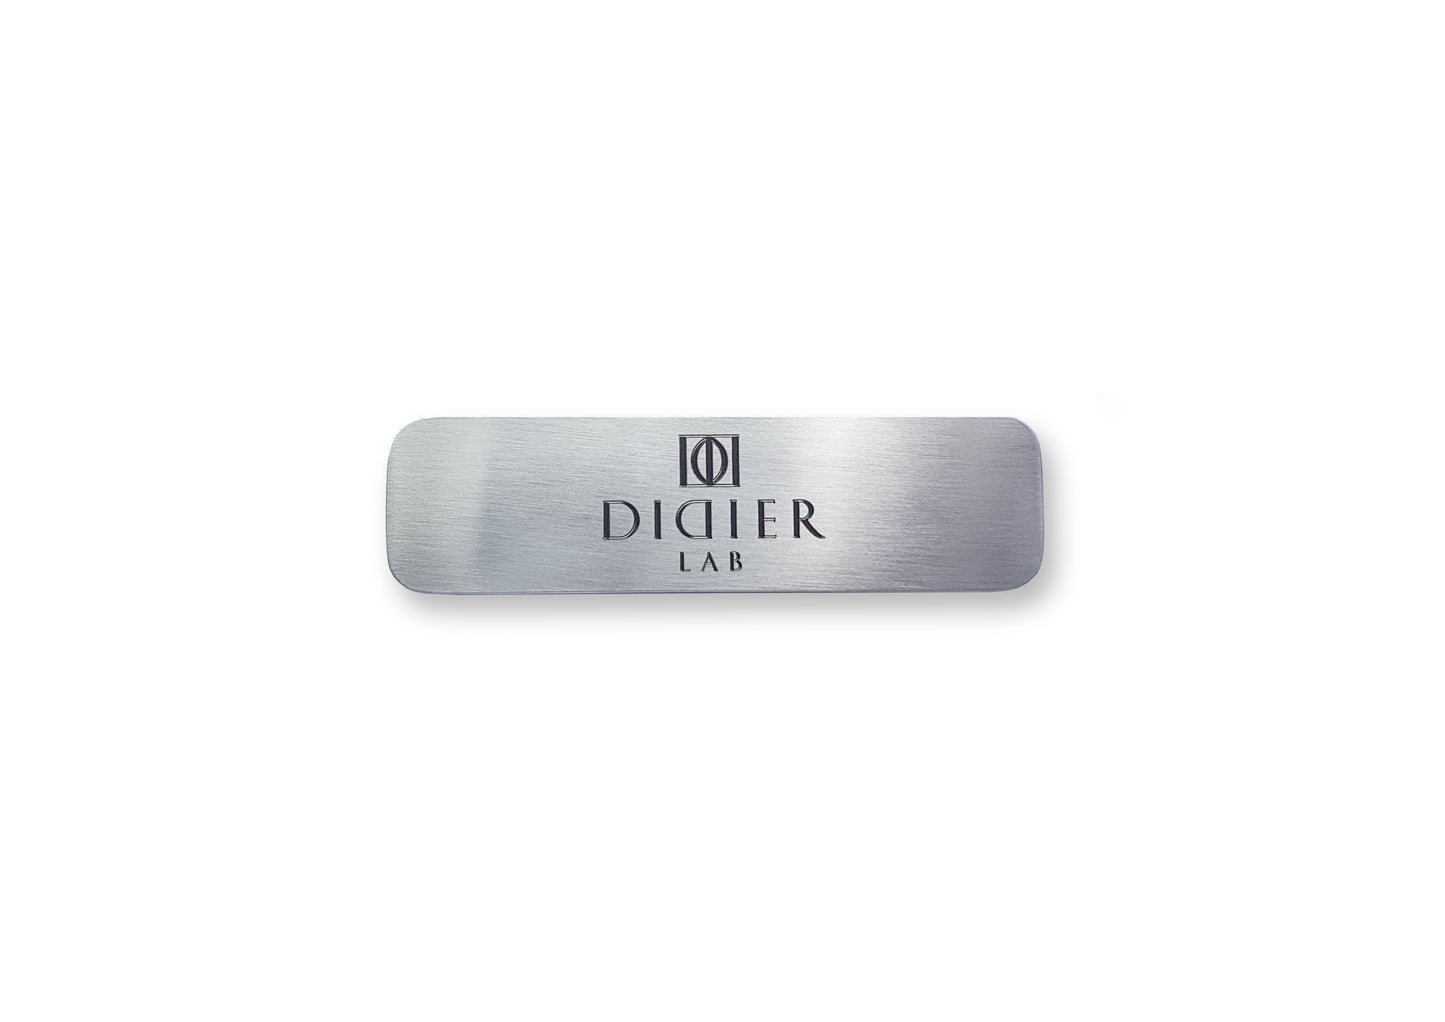 Didier Lab stainless steel polisher block holder (metāla)